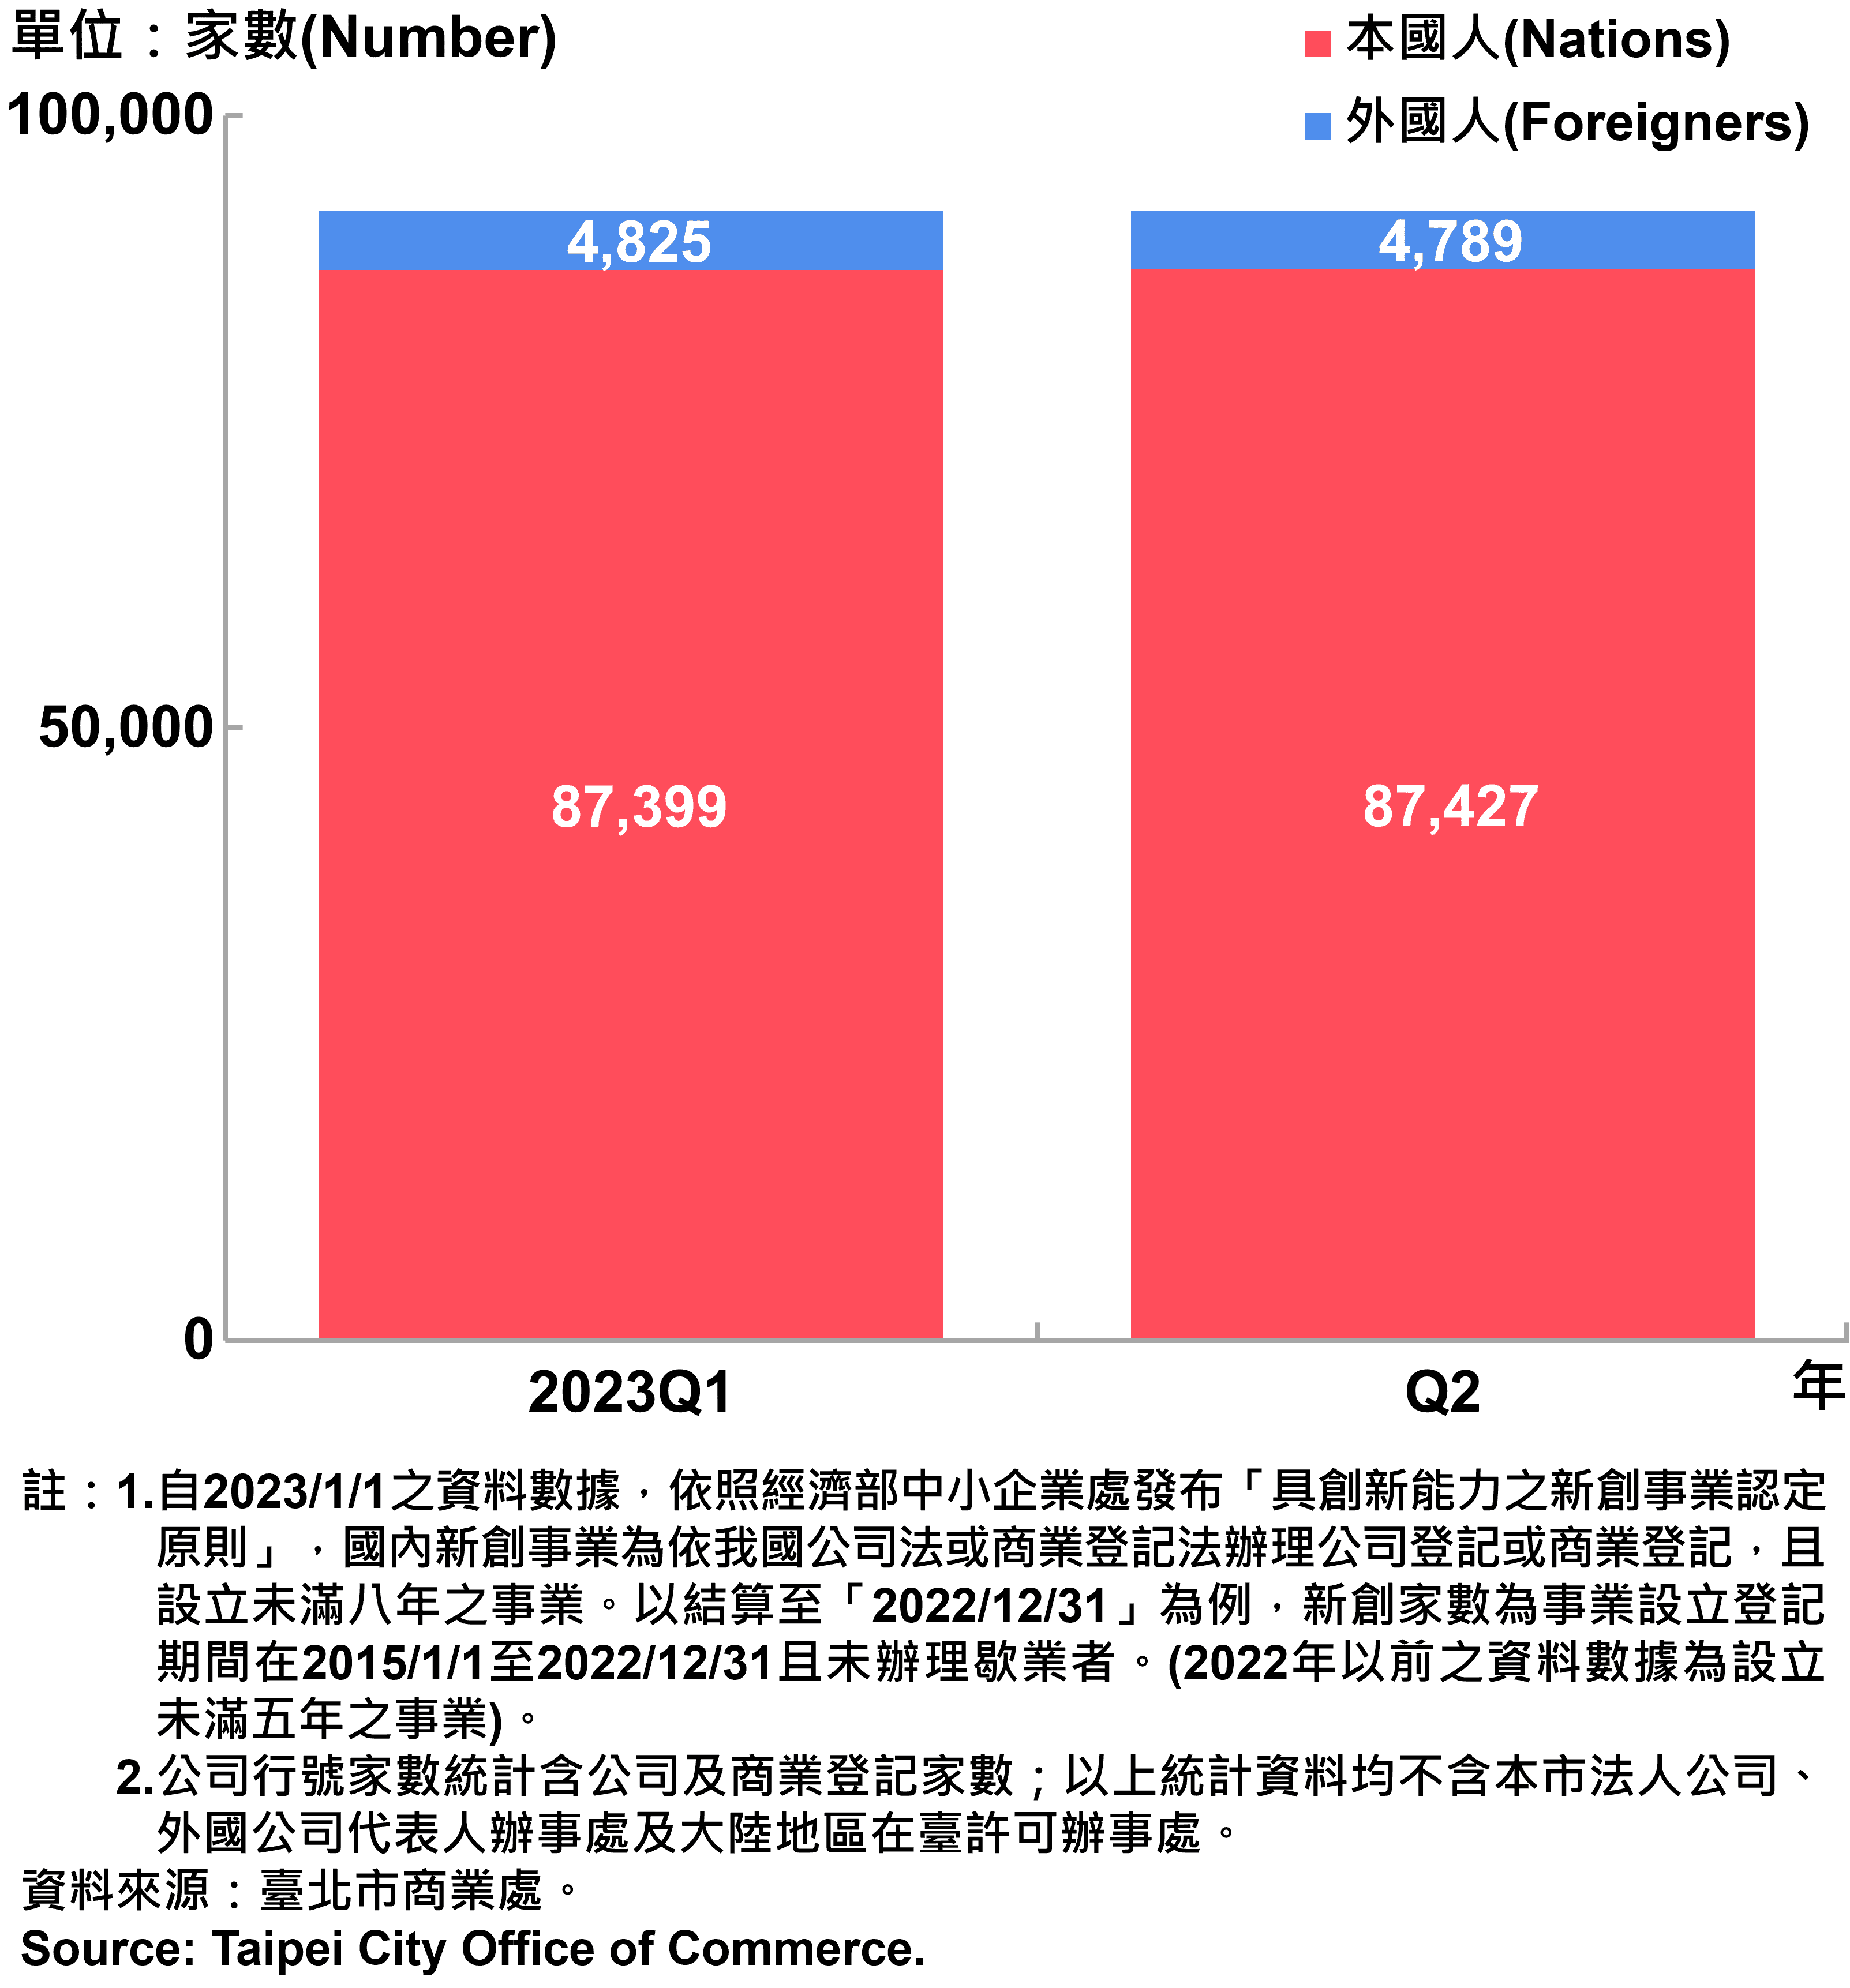 臺北市新創公司行號負責人-本國人與外國人分布情形-現存家數—2023Q2 Responsible Person of Newly Registered Companies In Taipei City by Nationality - Number of Current—2023Q2